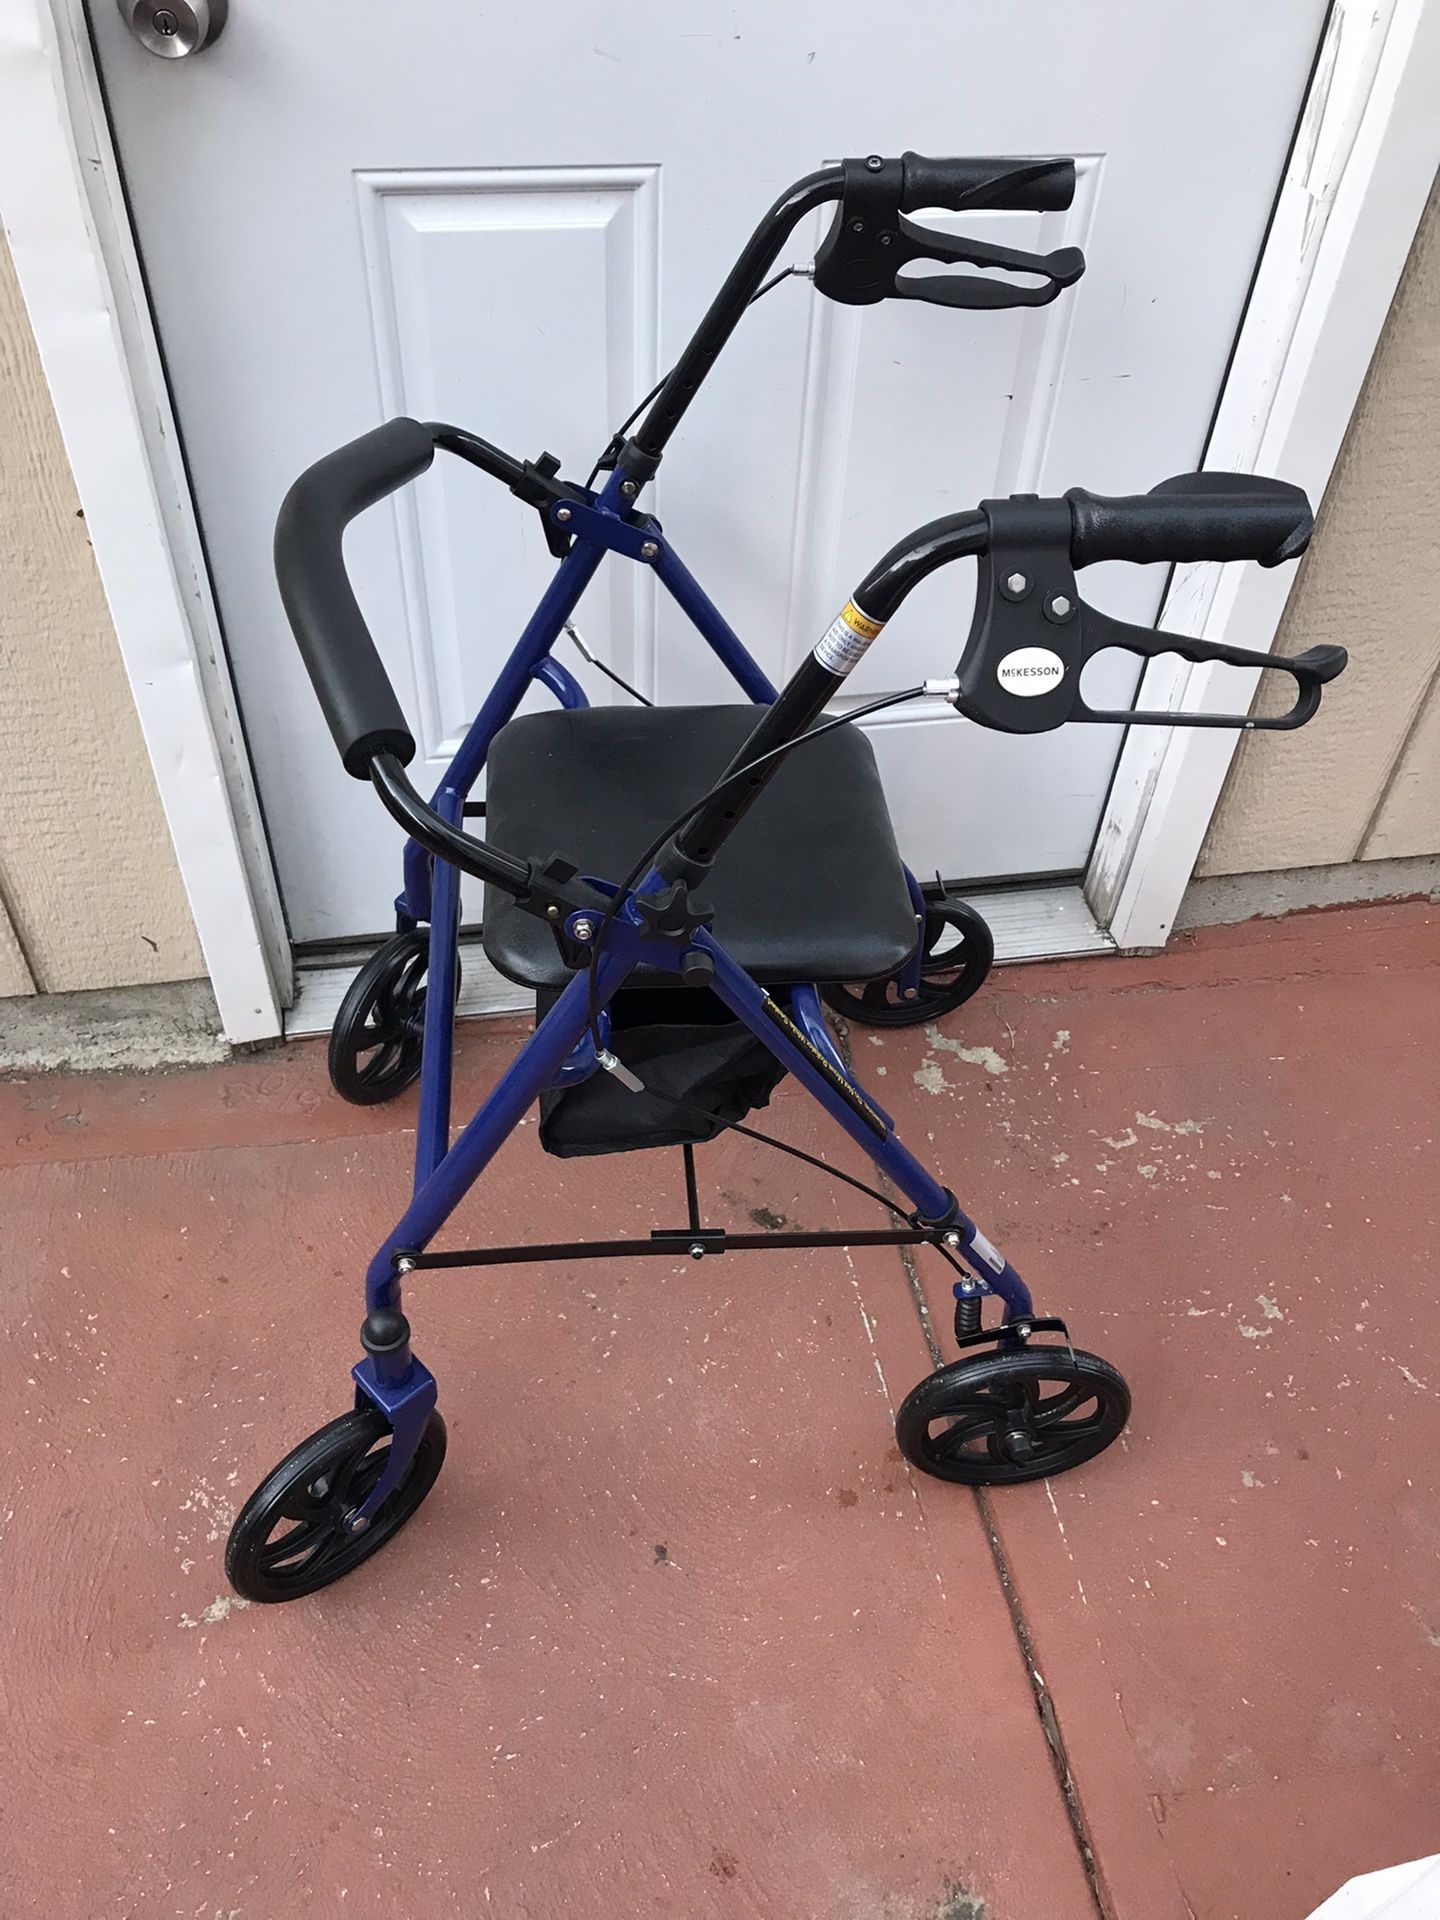 Wheelchair Rollator Rolling Walker, Blue Need Gone Asap 